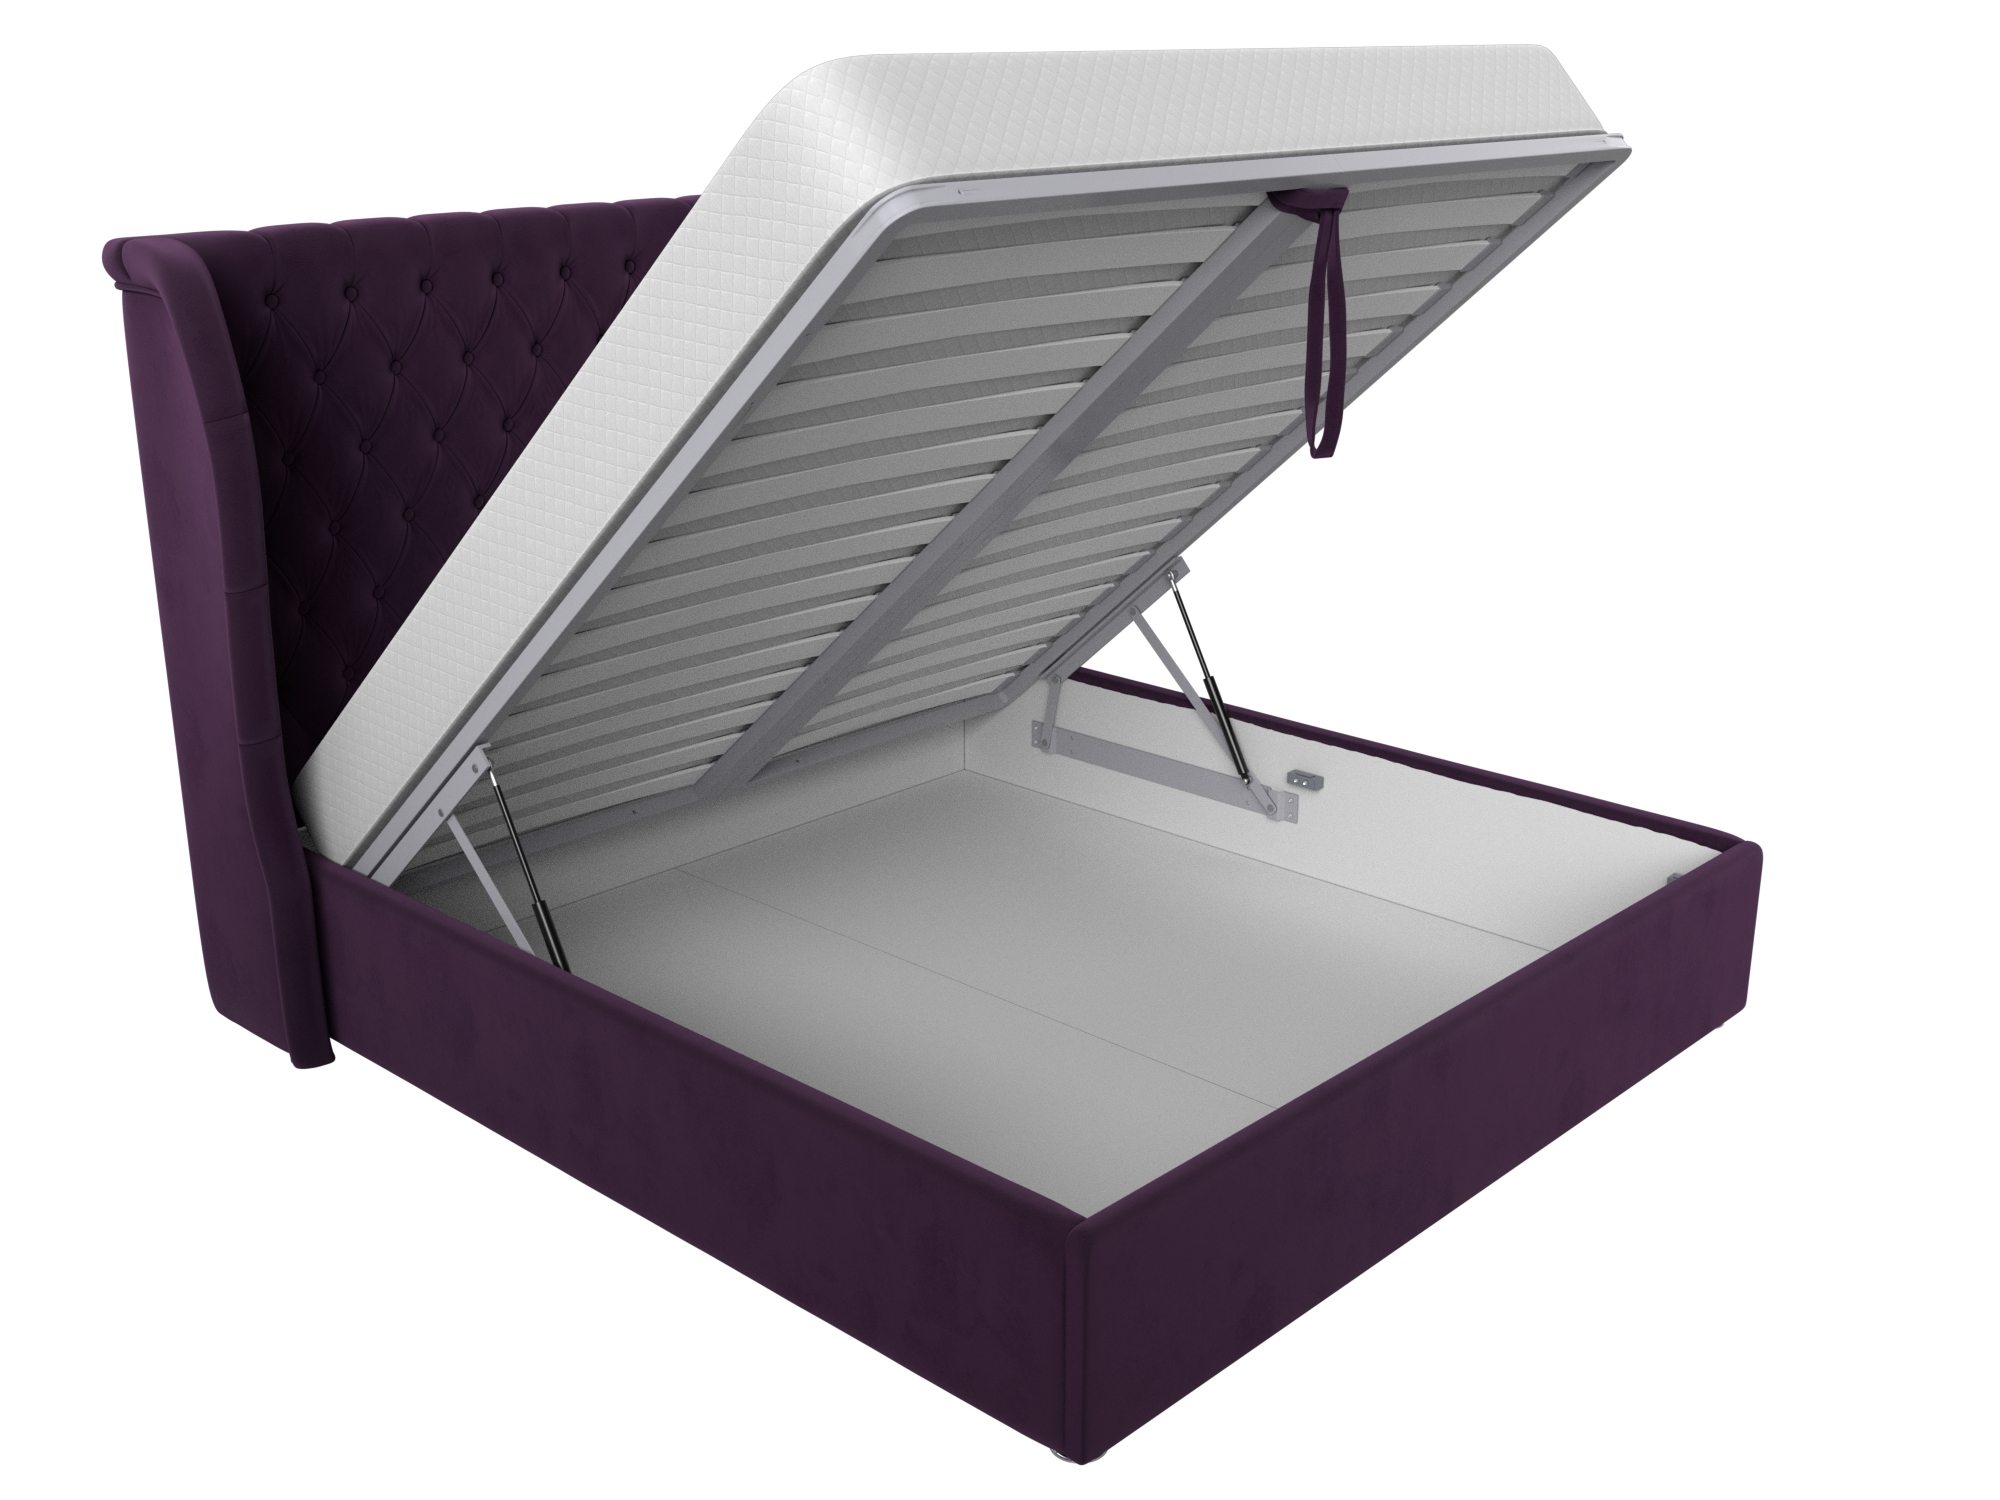 Интерьерная кровать Далия 180 Фиолетовый